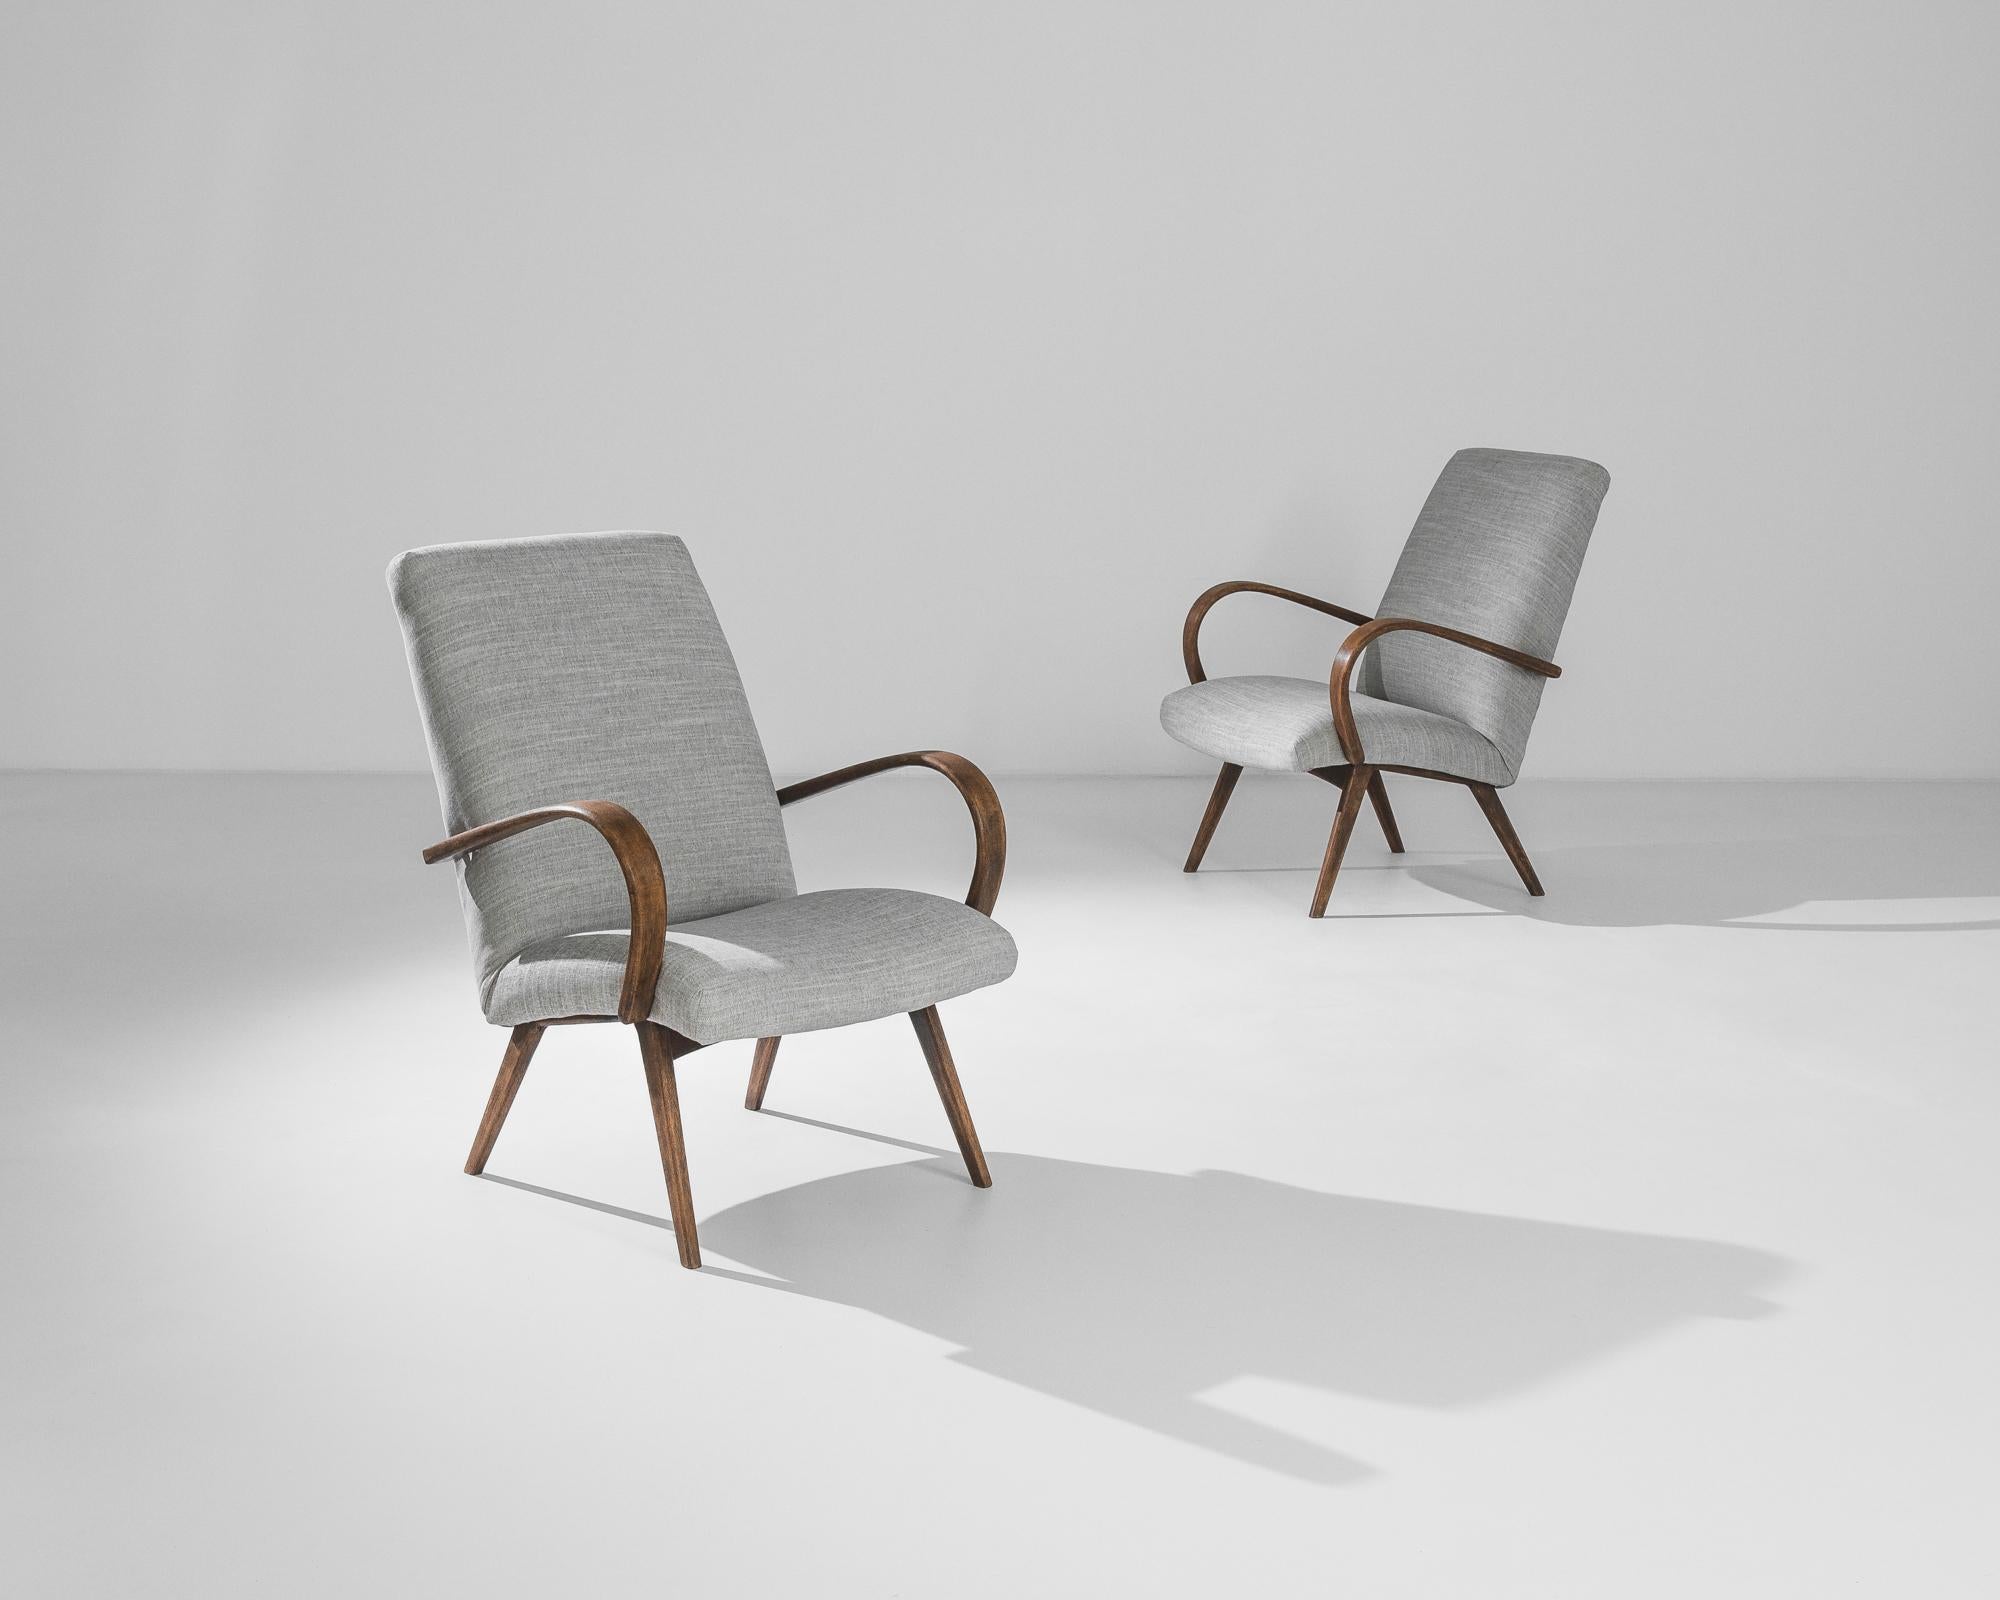 Fabriquée dans l'ancienne Tchécoslovaquie, cette paire de fauteuils en bois courbé datant des années 1950 a été retapissée avec un tissu gris moderne. Le mélange coton-lin a été choisi pour compléter l'élégance vintage de la structure en bois dur